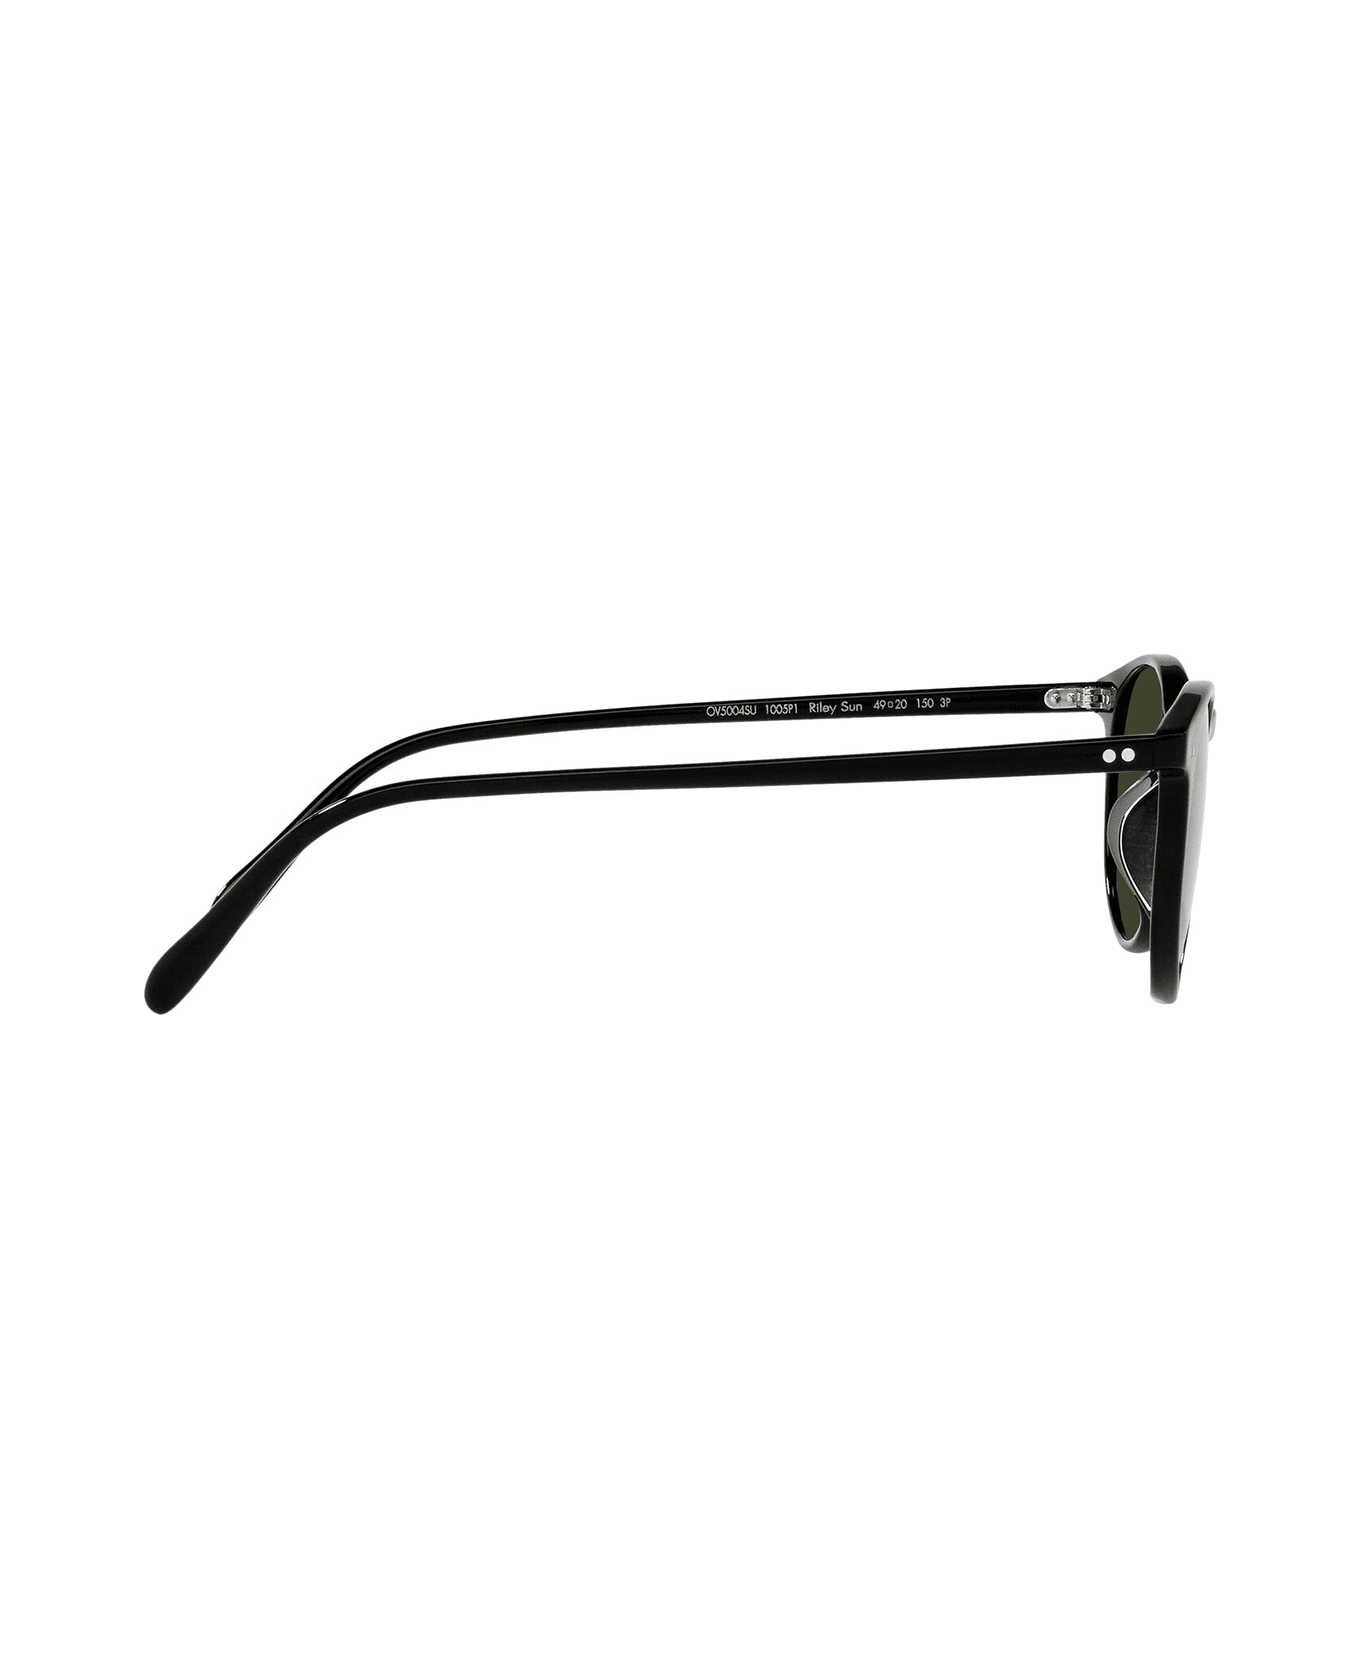 Oliver Peoples Ov5004su Black Sunglasses - Black